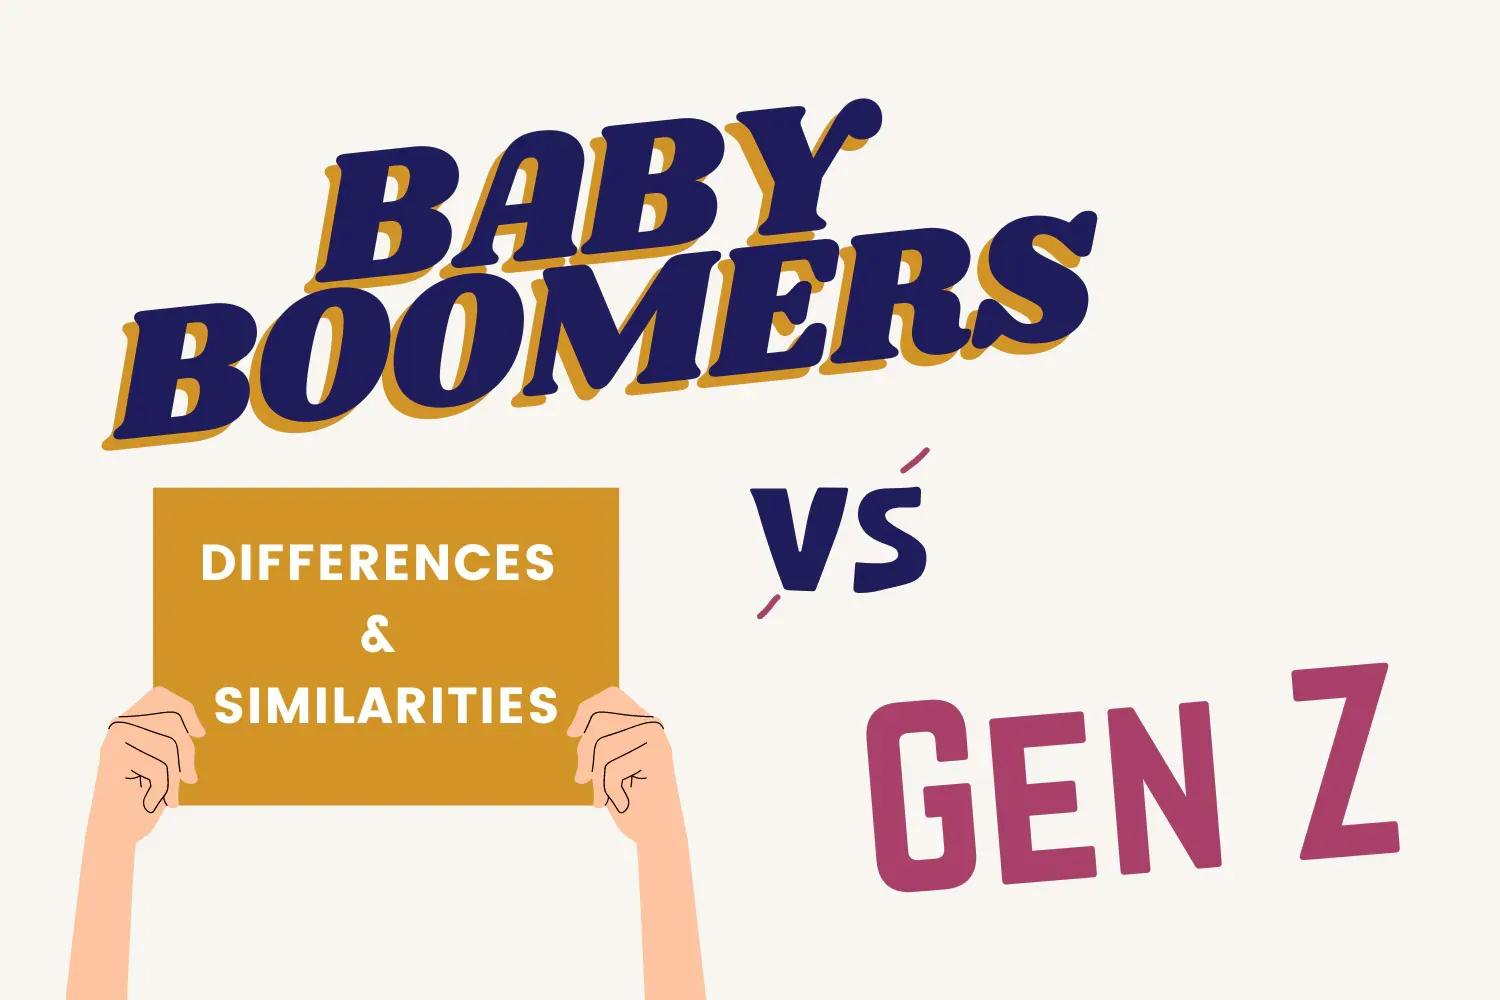 Baby boomers vs Gen z